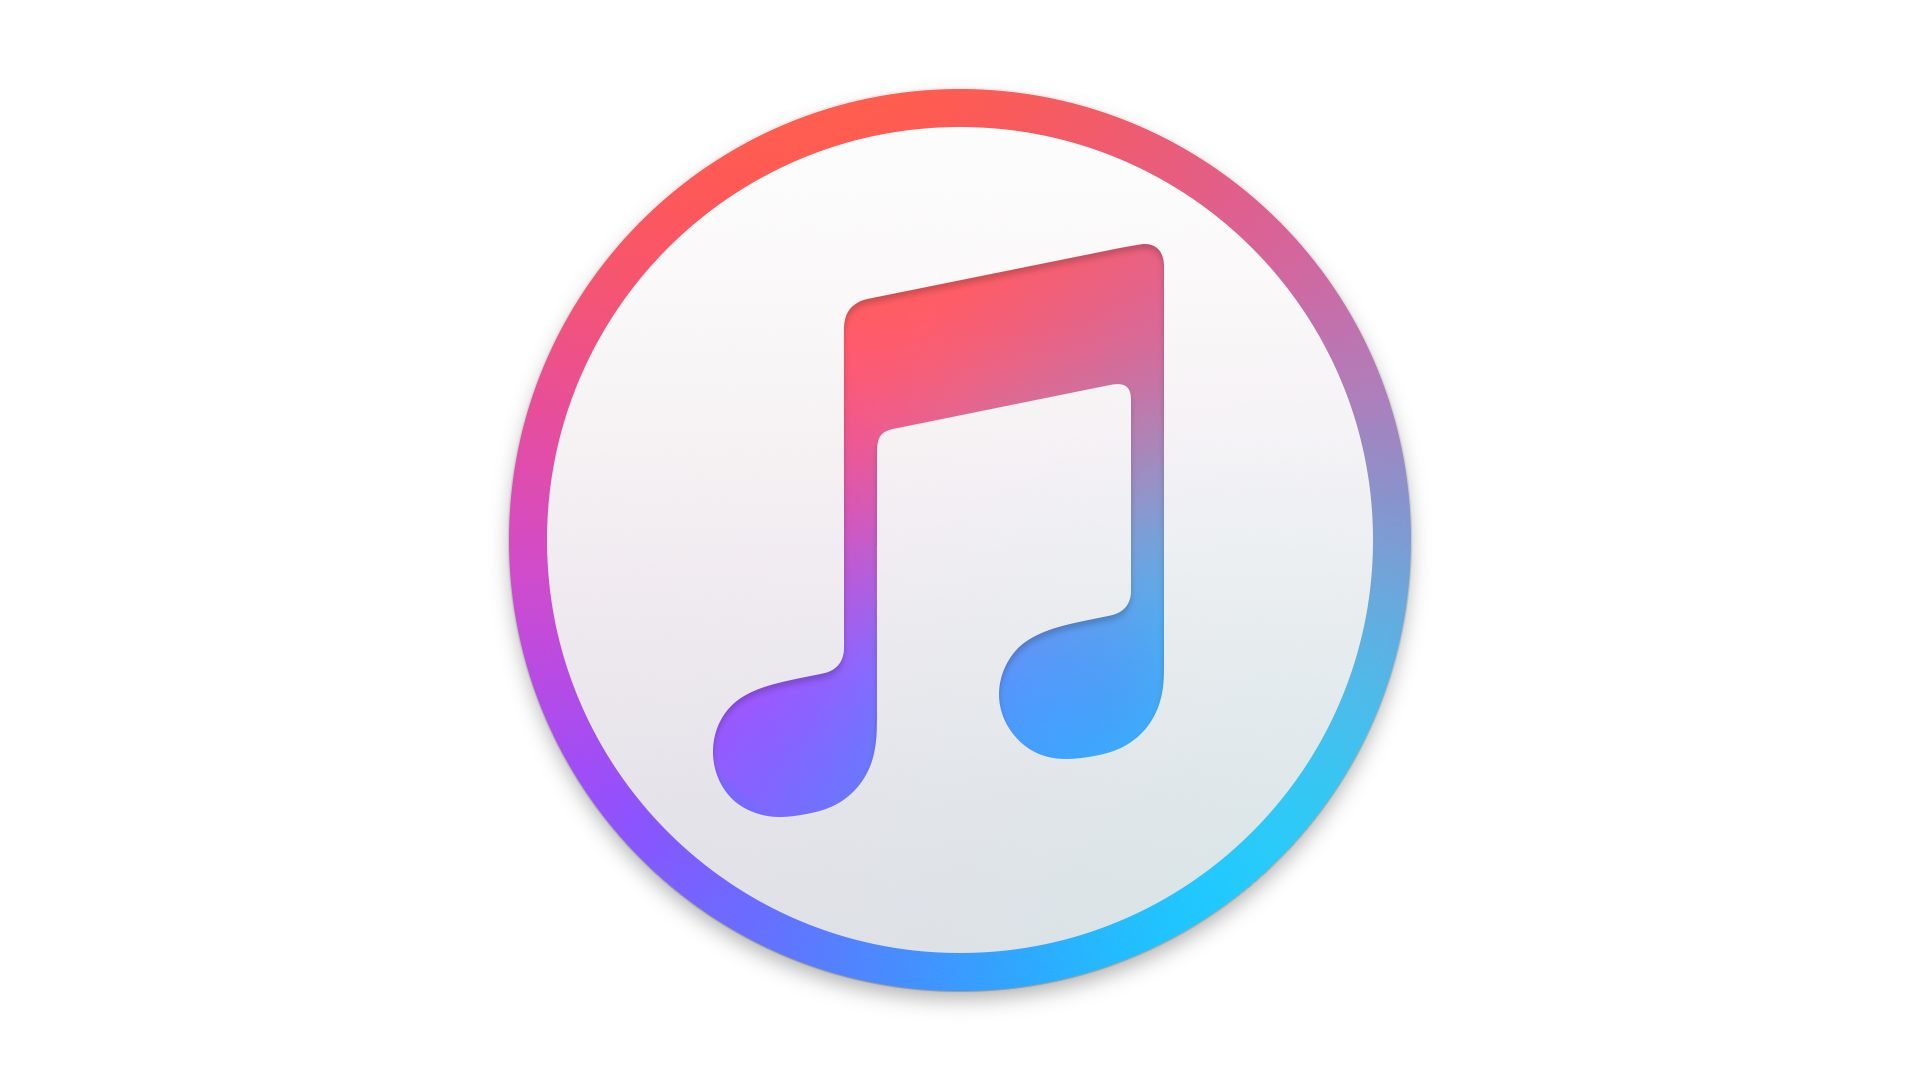 Logo von iTunes